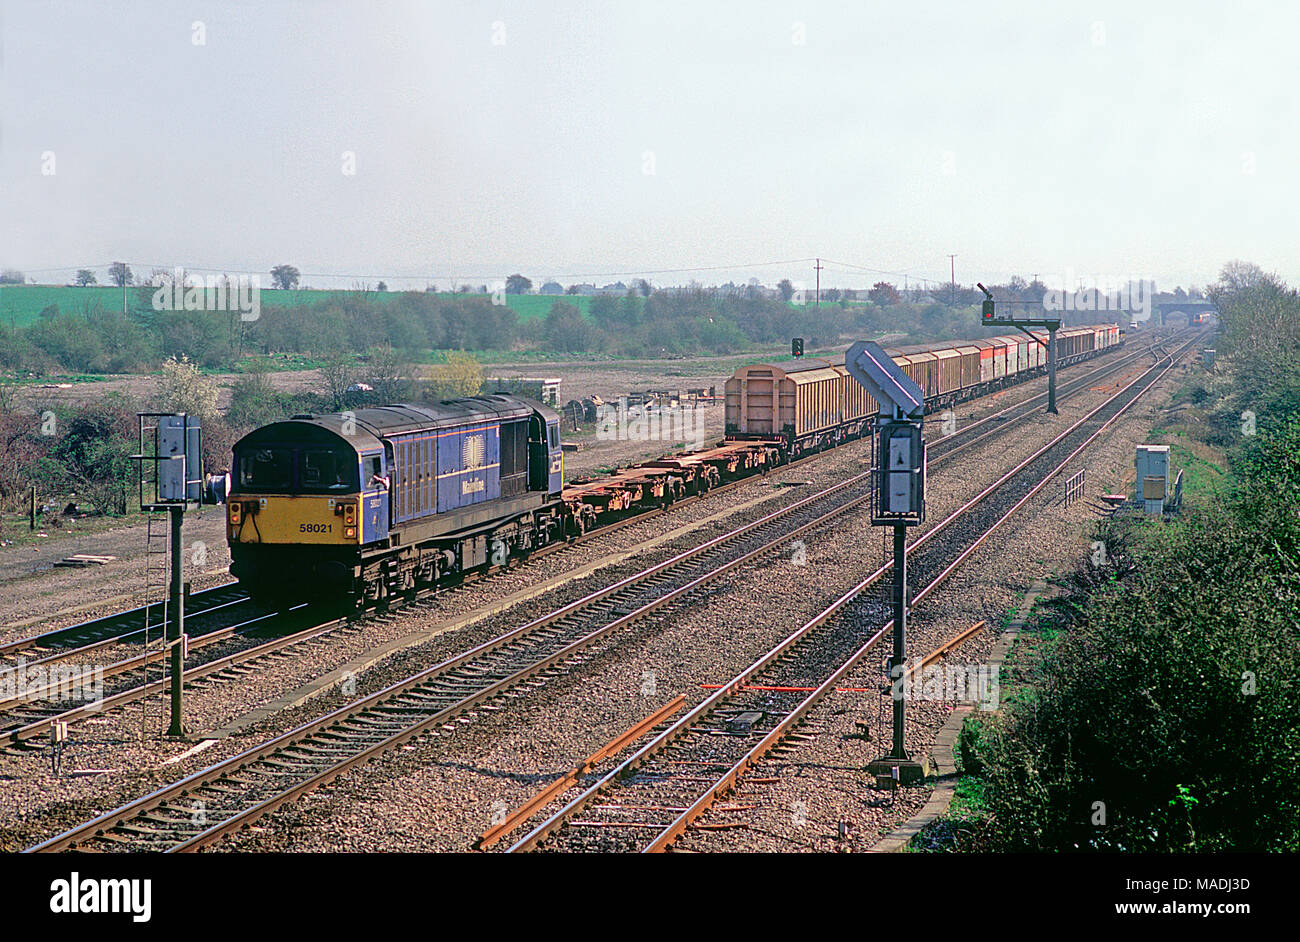 Eine Klasse 58 Diesellok Reihe 58021 Arbeiten eine langatmige MOD speichert Zug erhält ein Signal prüfen für Süd Moreton am 28. März 2002. Stockfoto